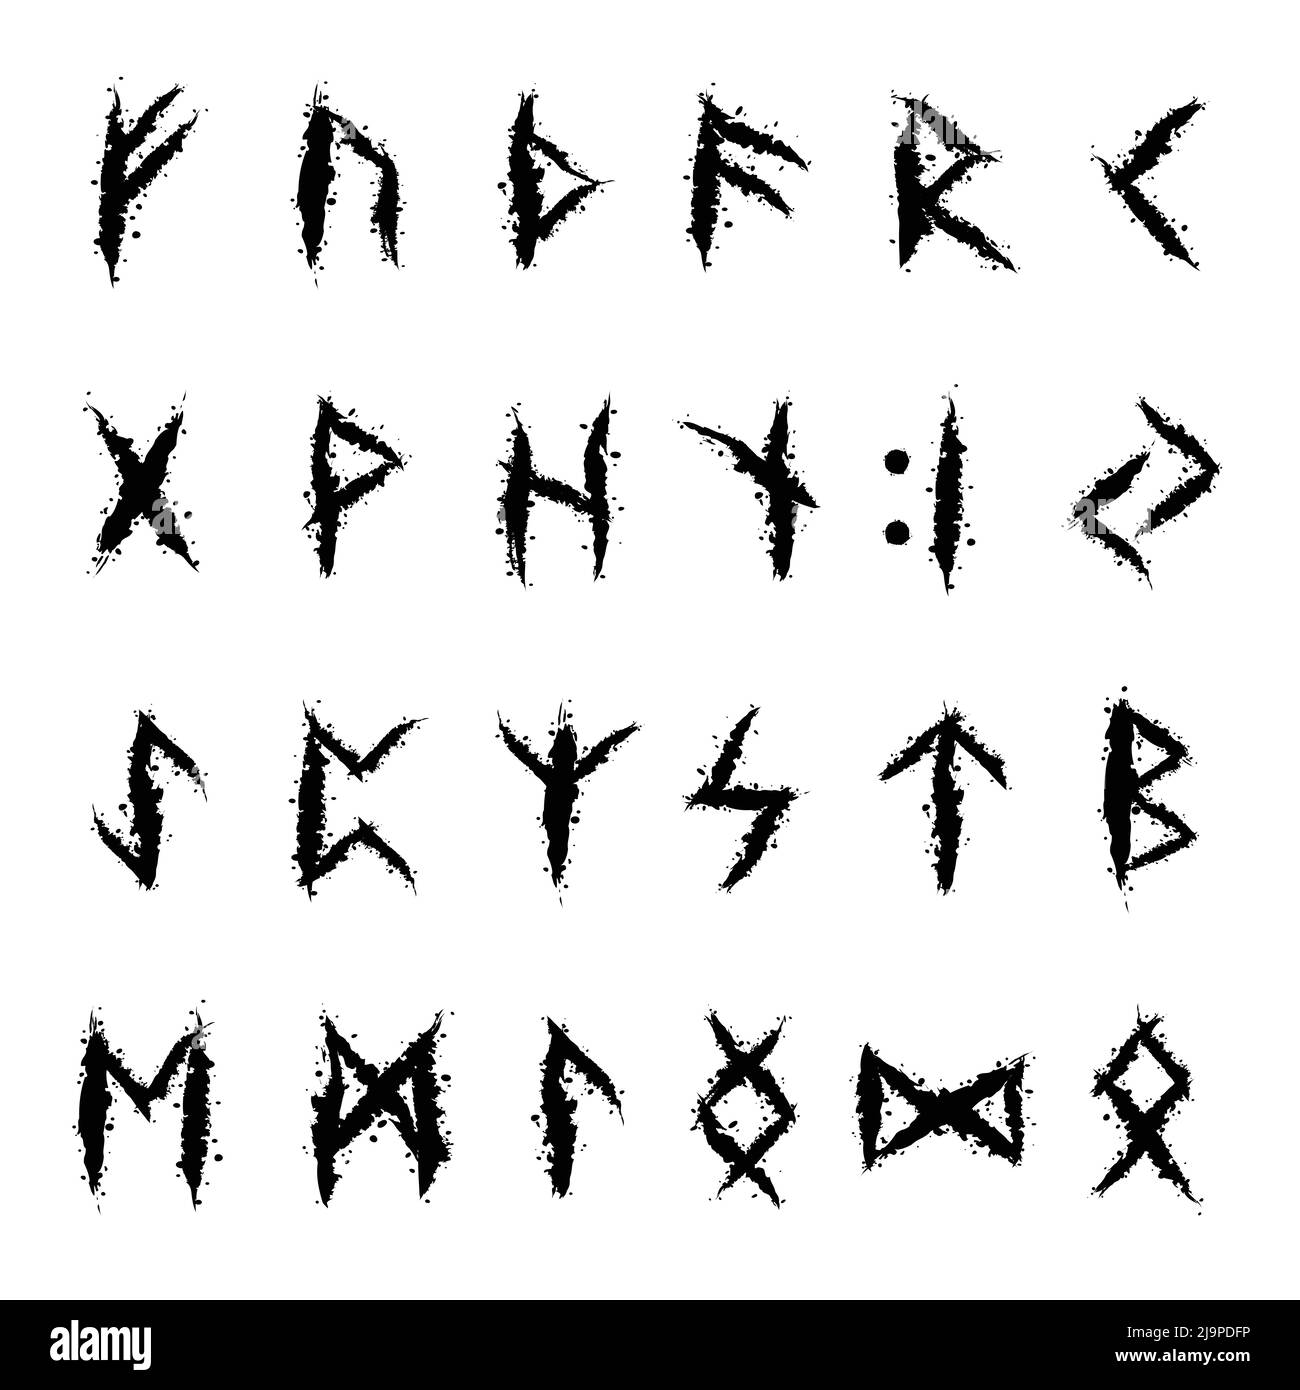 Lettres scandinaves de l'alphabet runique Illustration de Vecteur